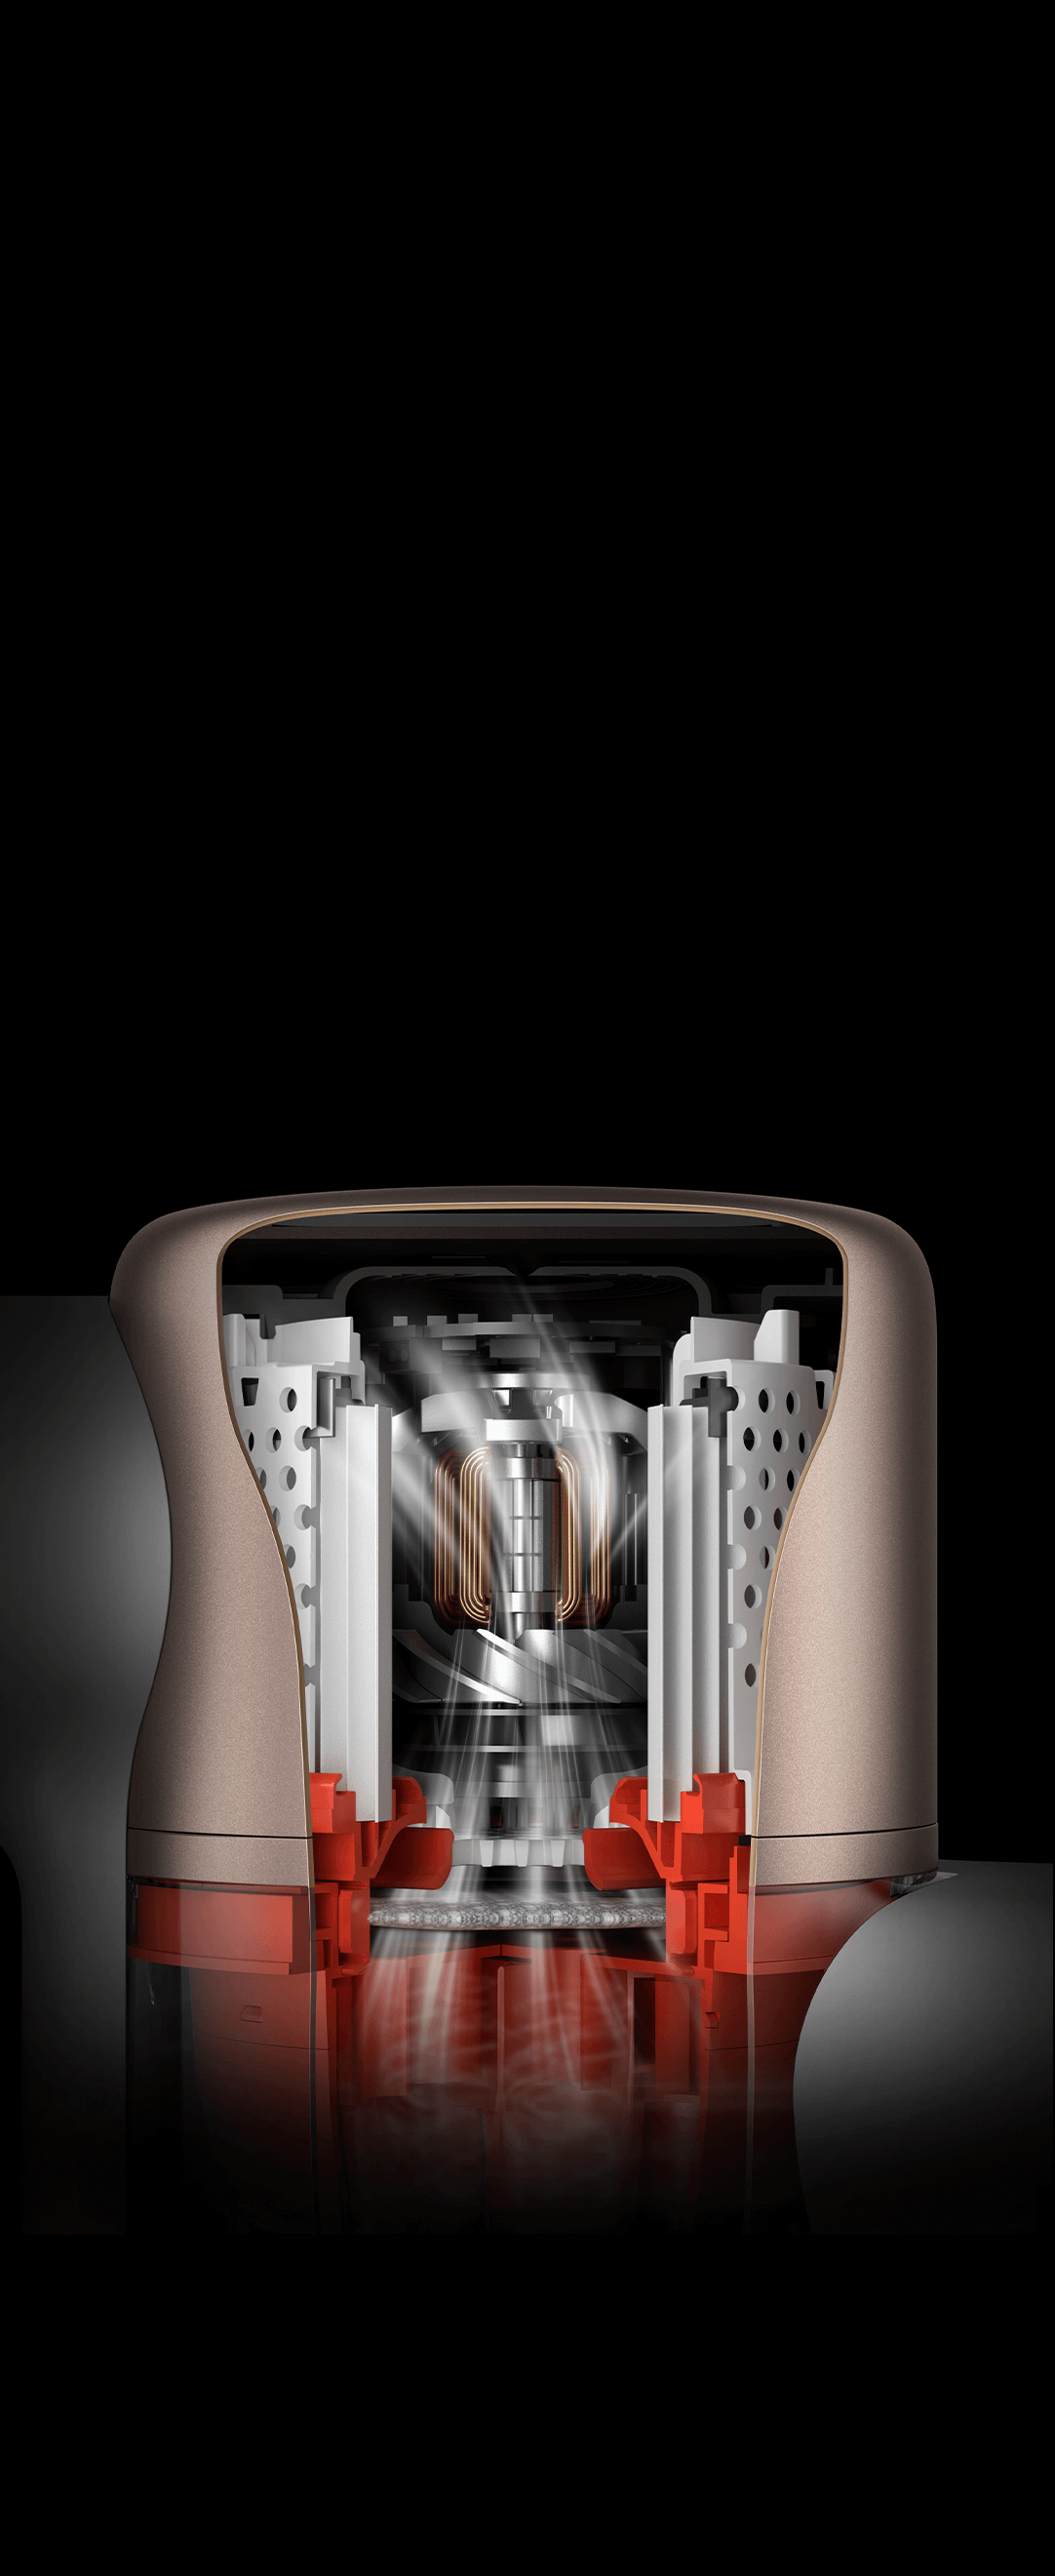 Mi Vacuum Cleaner G10. Portátil y sin cables. Potencia de succión máxima de  150 vatios de aire. Hasta 65 minutos de tiempo de ejecución Batería  desmontable. : Xiaomi: : Electrónica